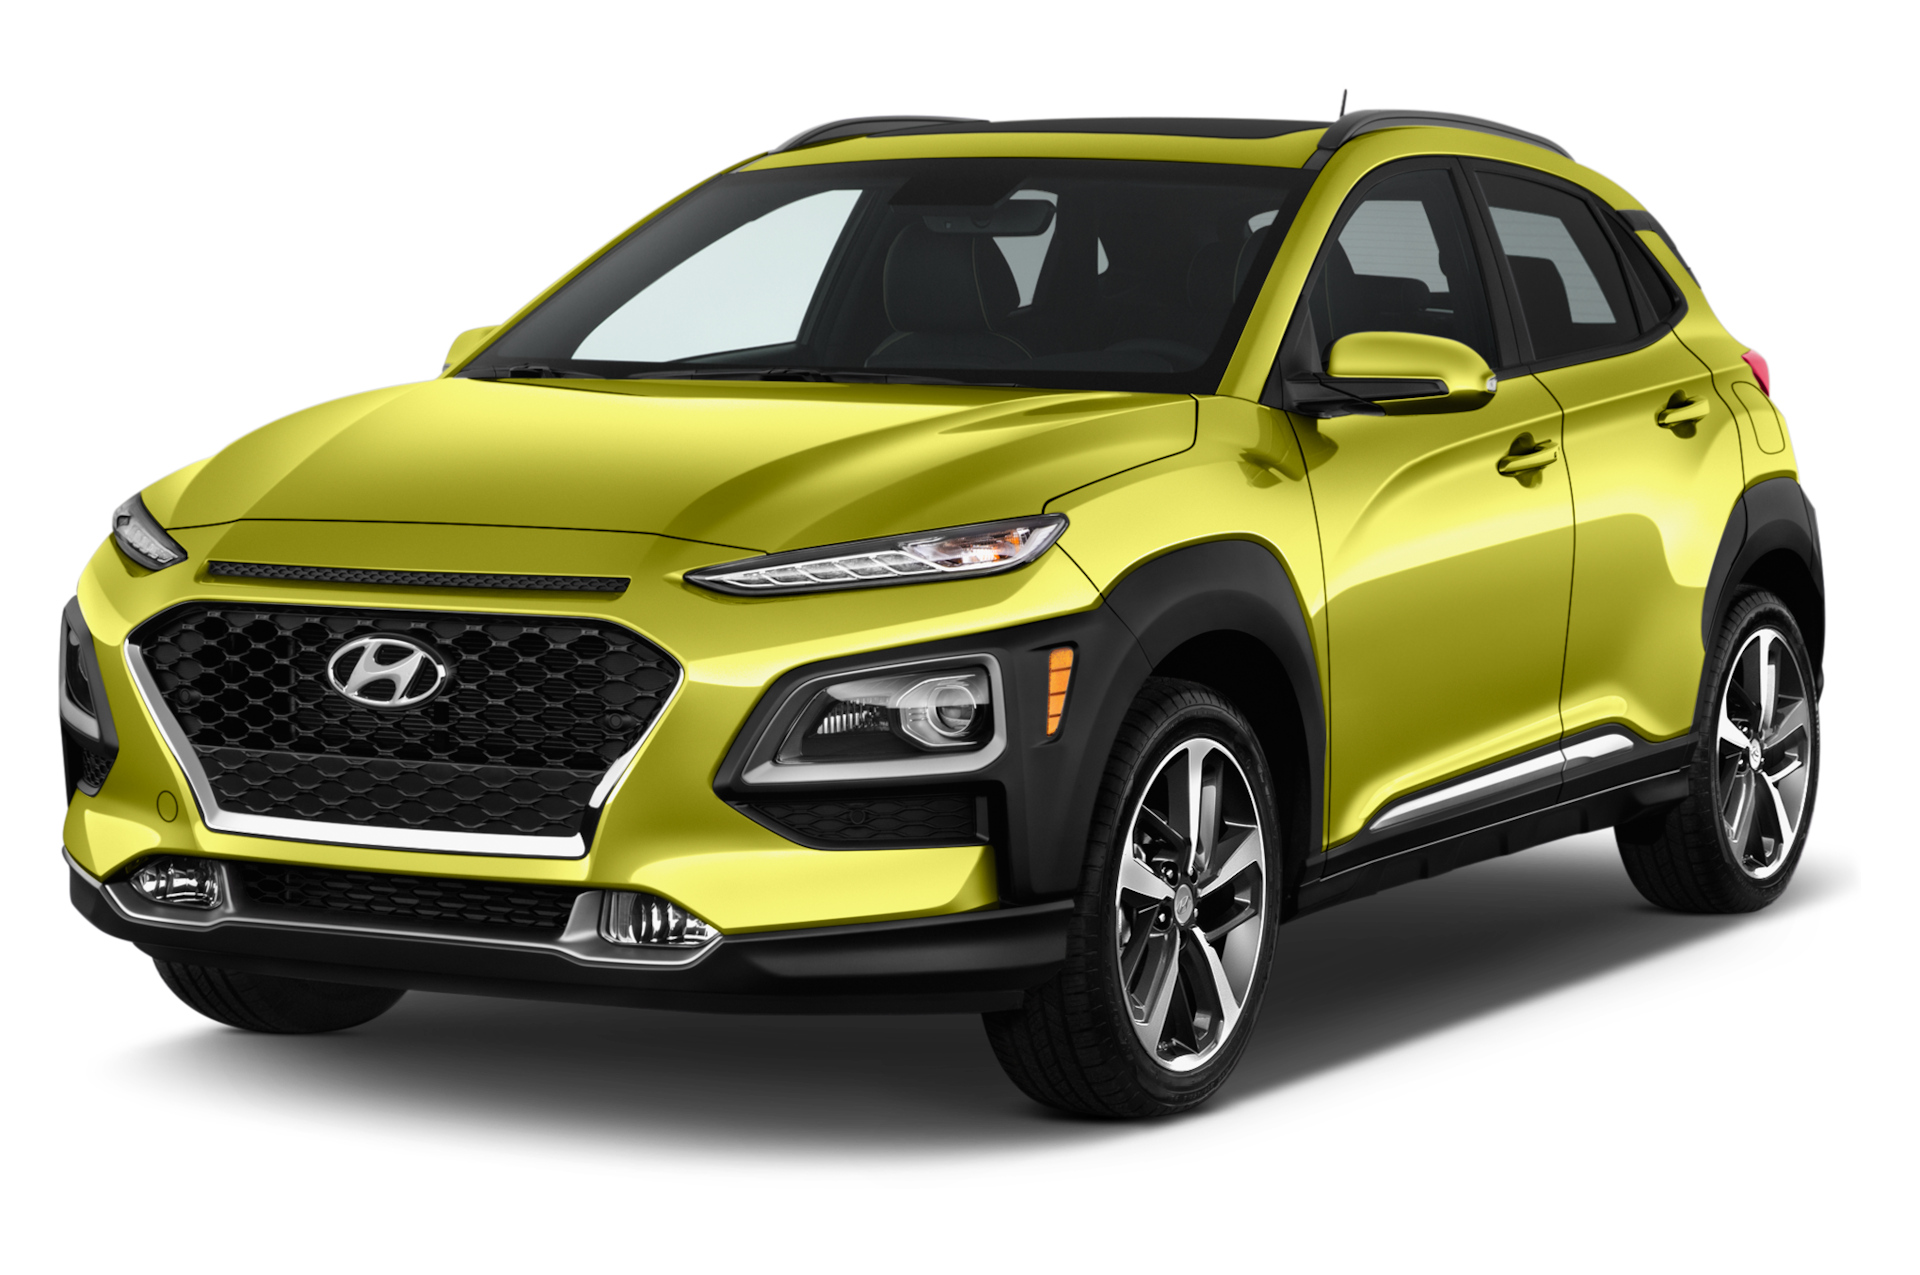 2018 Hyundai Kona Prices, Reviews, and Photos - MotorTrend